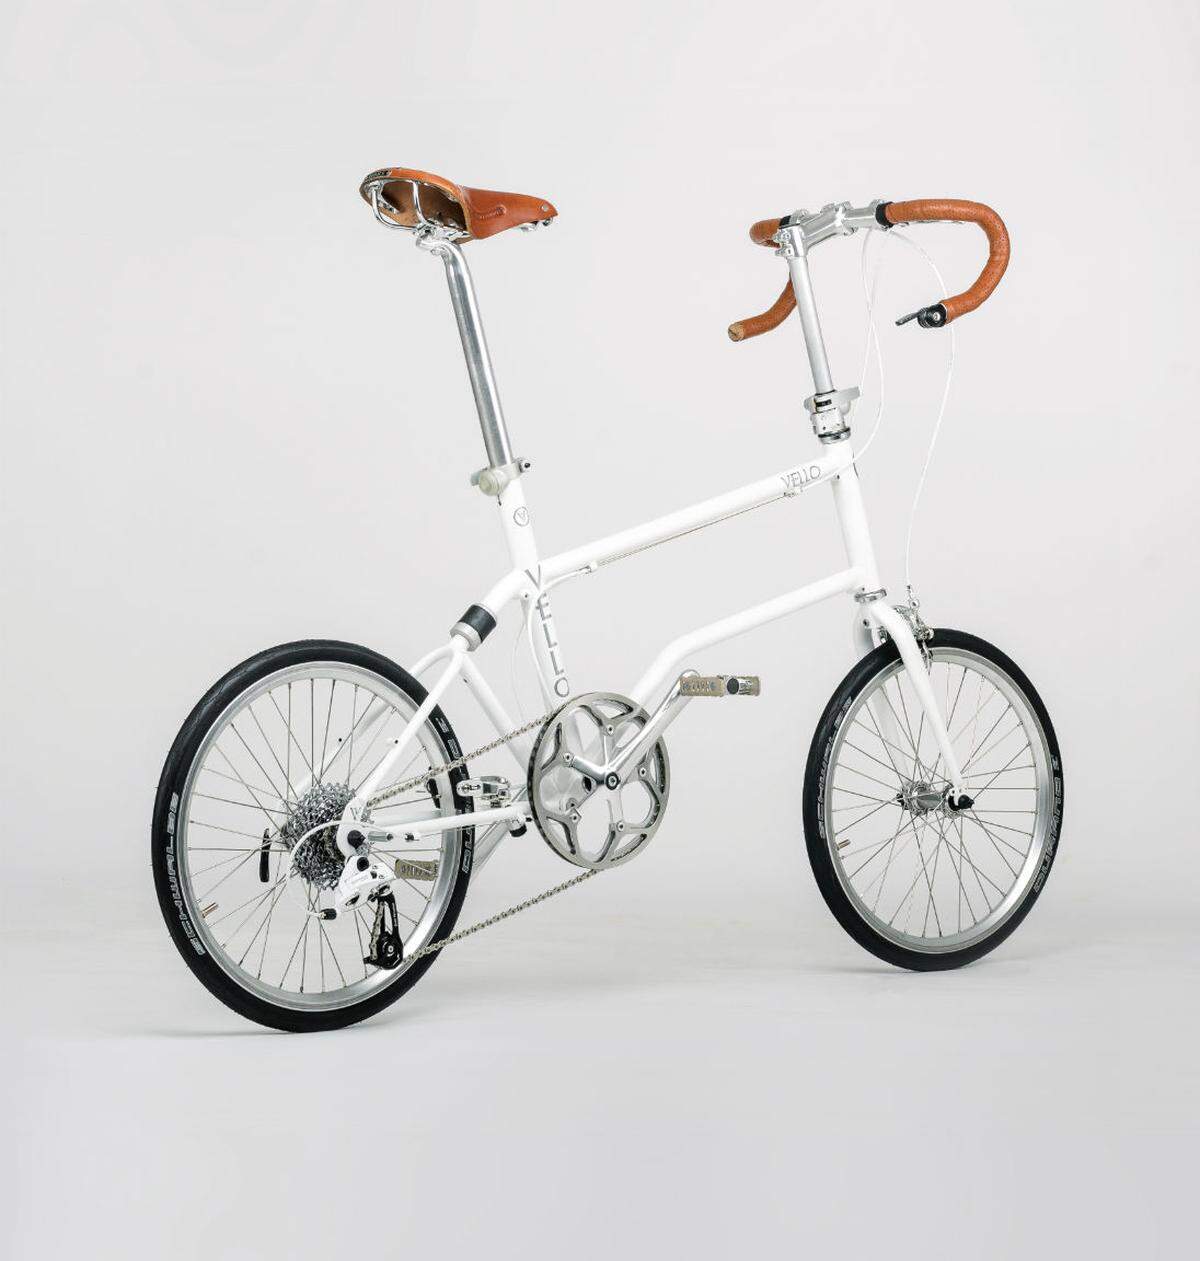 Das Vello bike ist ein kompaktes und wendiges Faltrad, das speziell für die Stadt entwickelt wurde. Hersteller: VELLO bike, ÖsterreichDesign: Valentin Vodev, Österreich